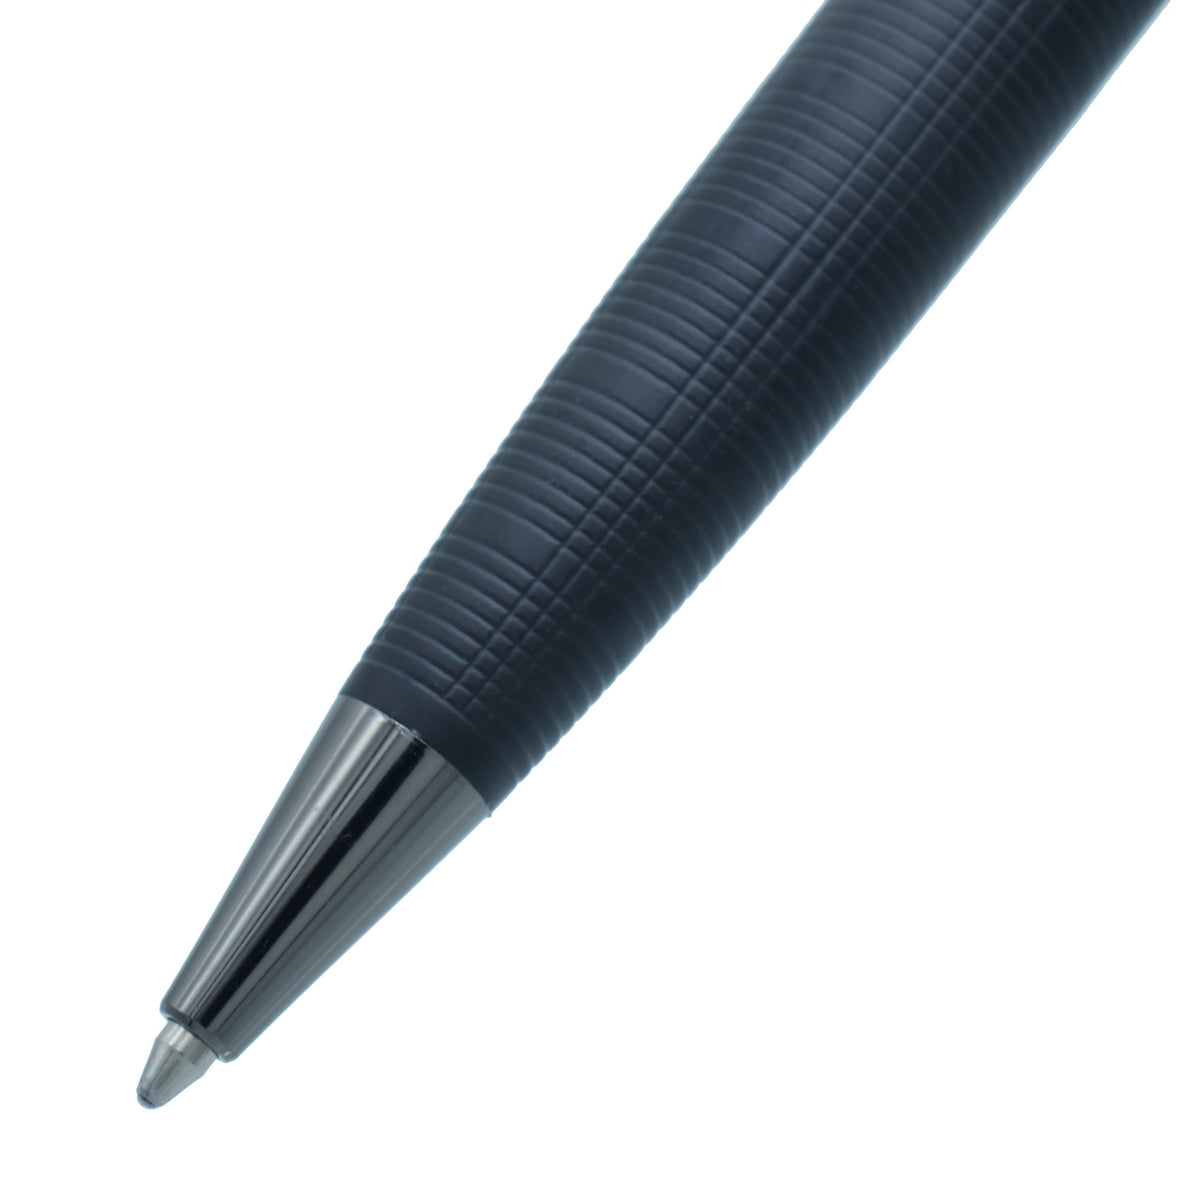 jags-mumbai Ball Pens Ball Pen Black 350BPBK - Your Go-To Pen for Smooth Writing